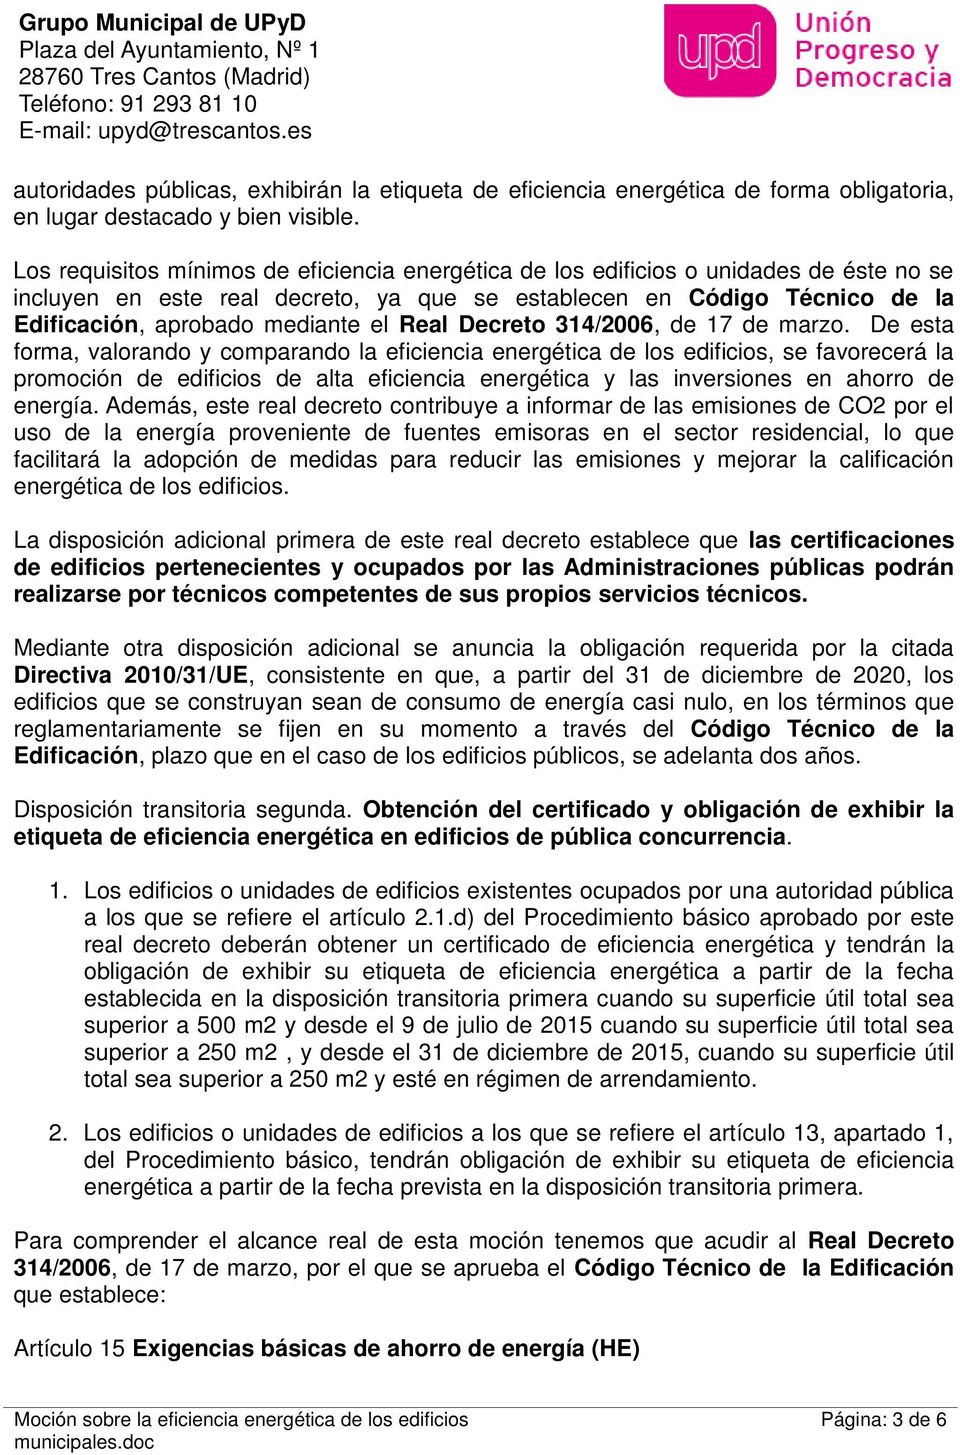 Real Decreto 314/2006, de 17 de marzo.